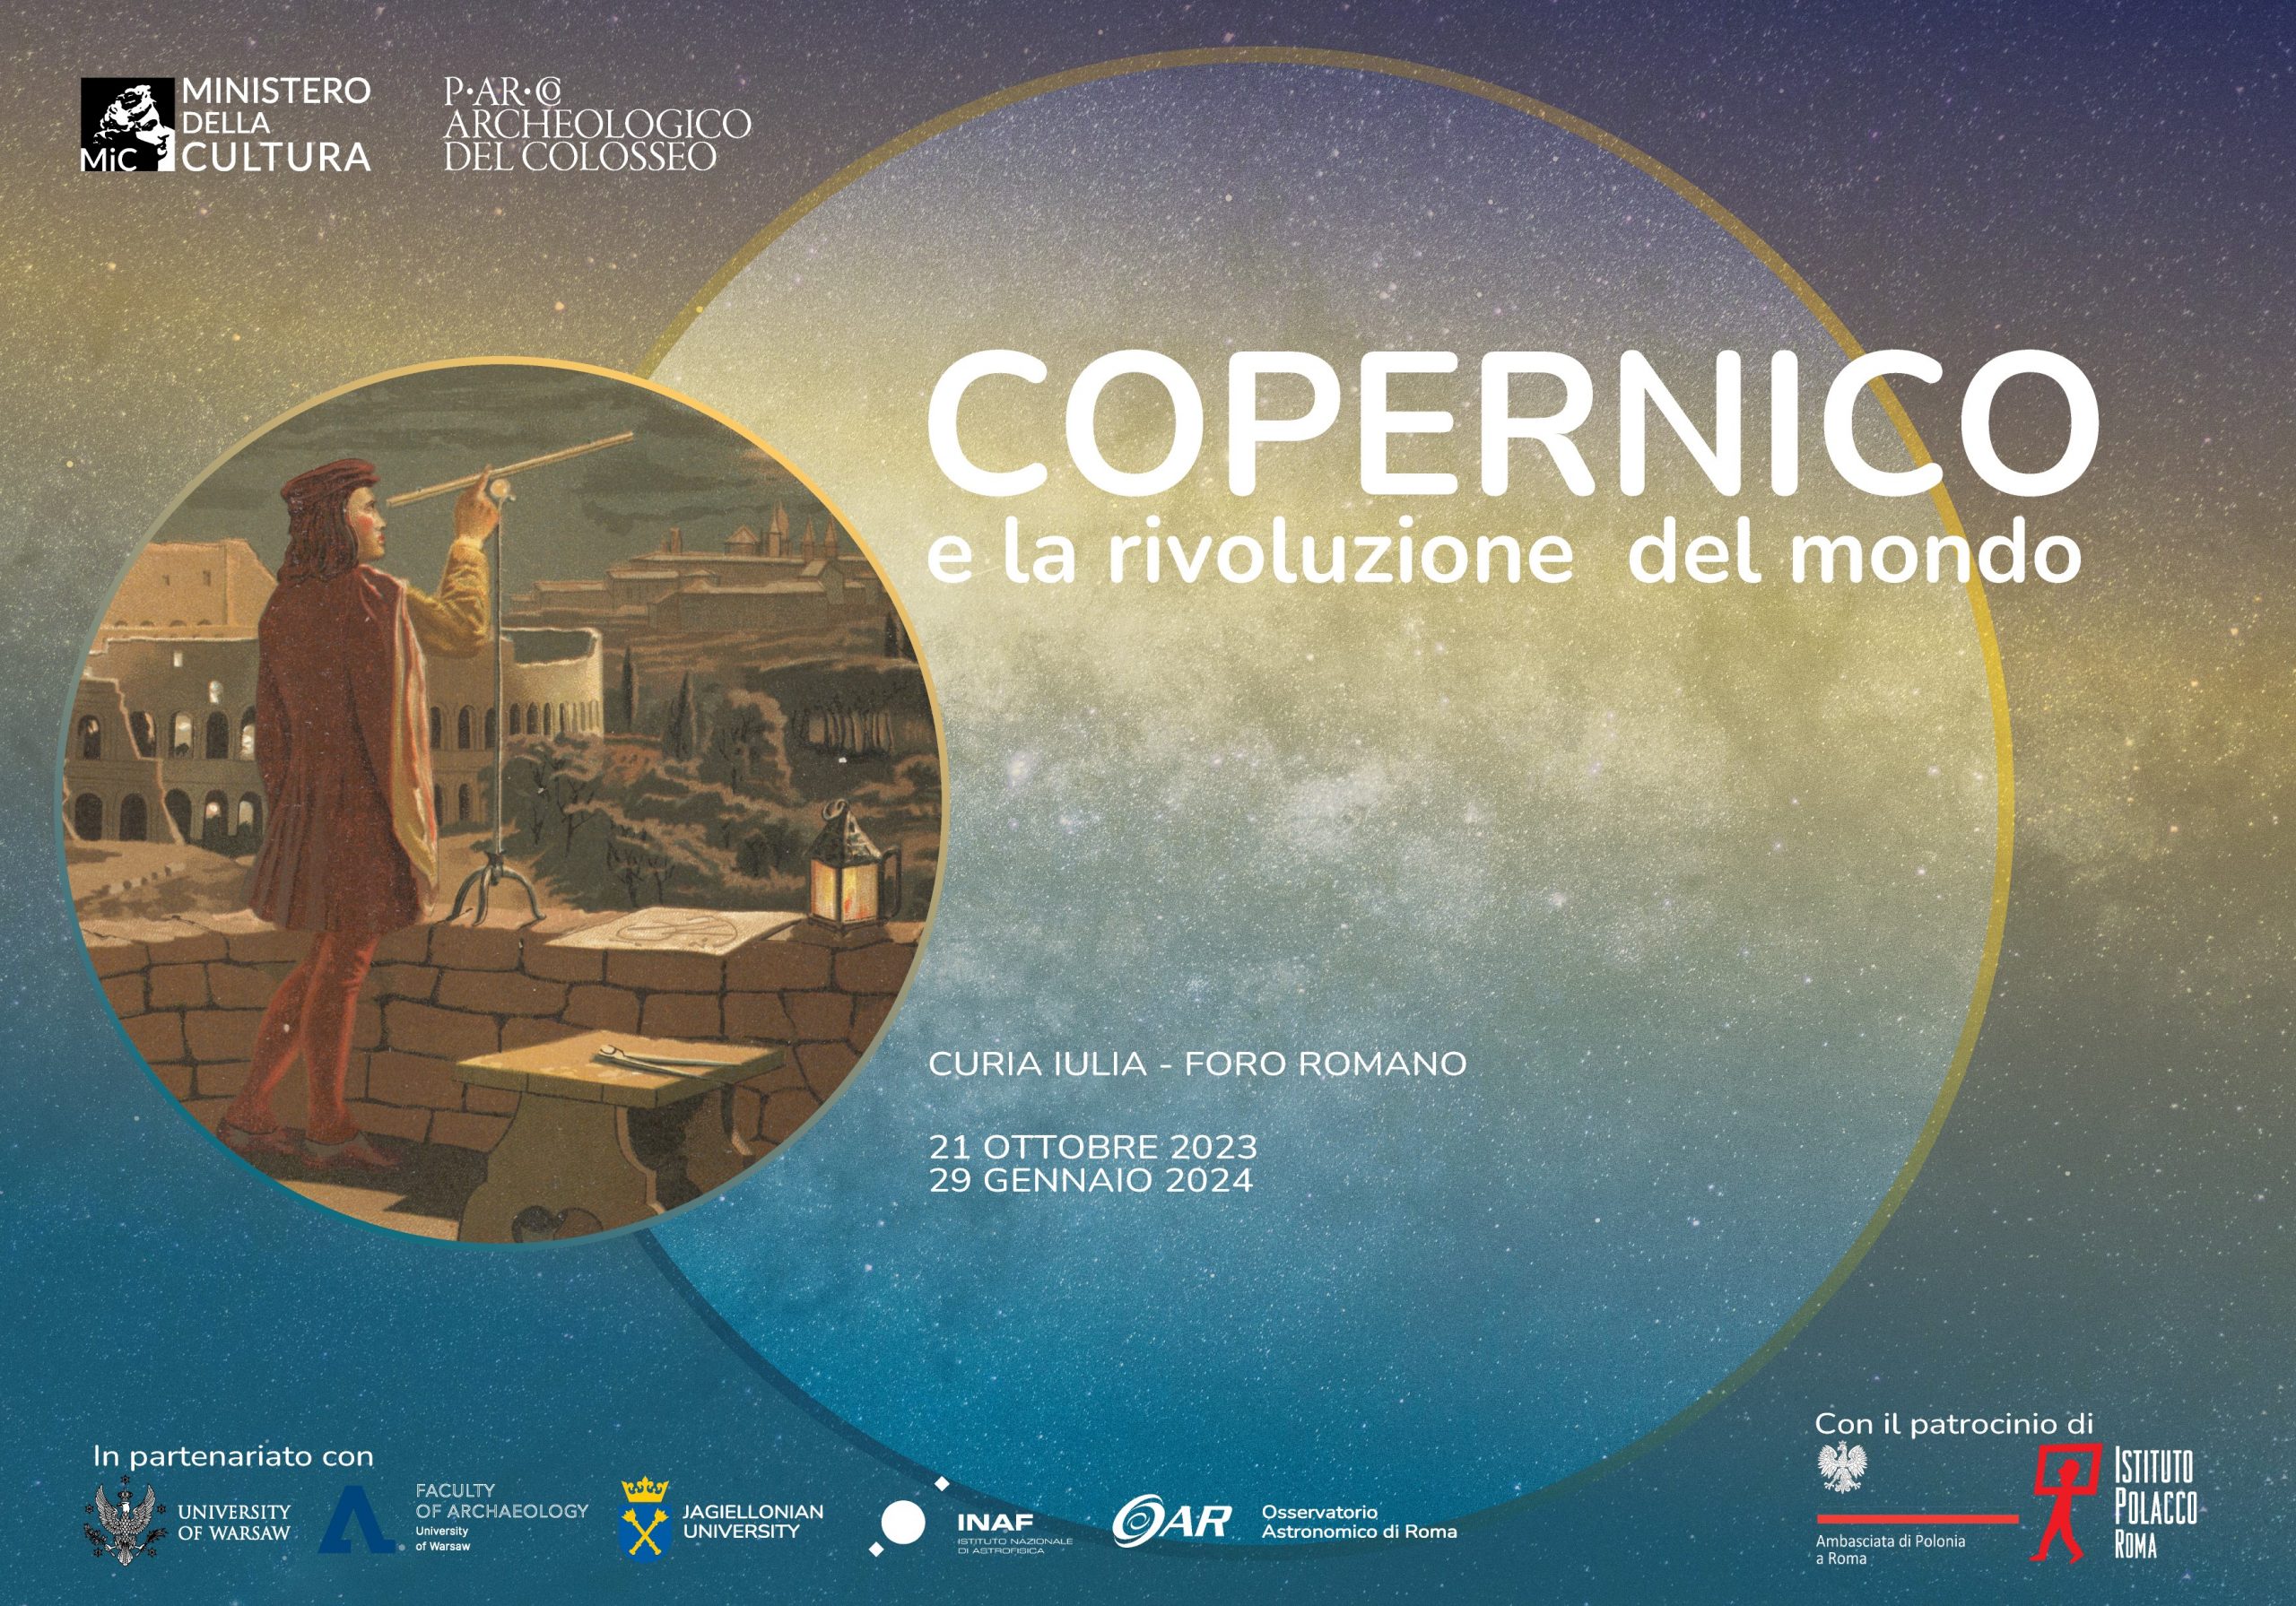 Copernico e la rivoluzione del mondo, la mostra Roma Curia Iulia